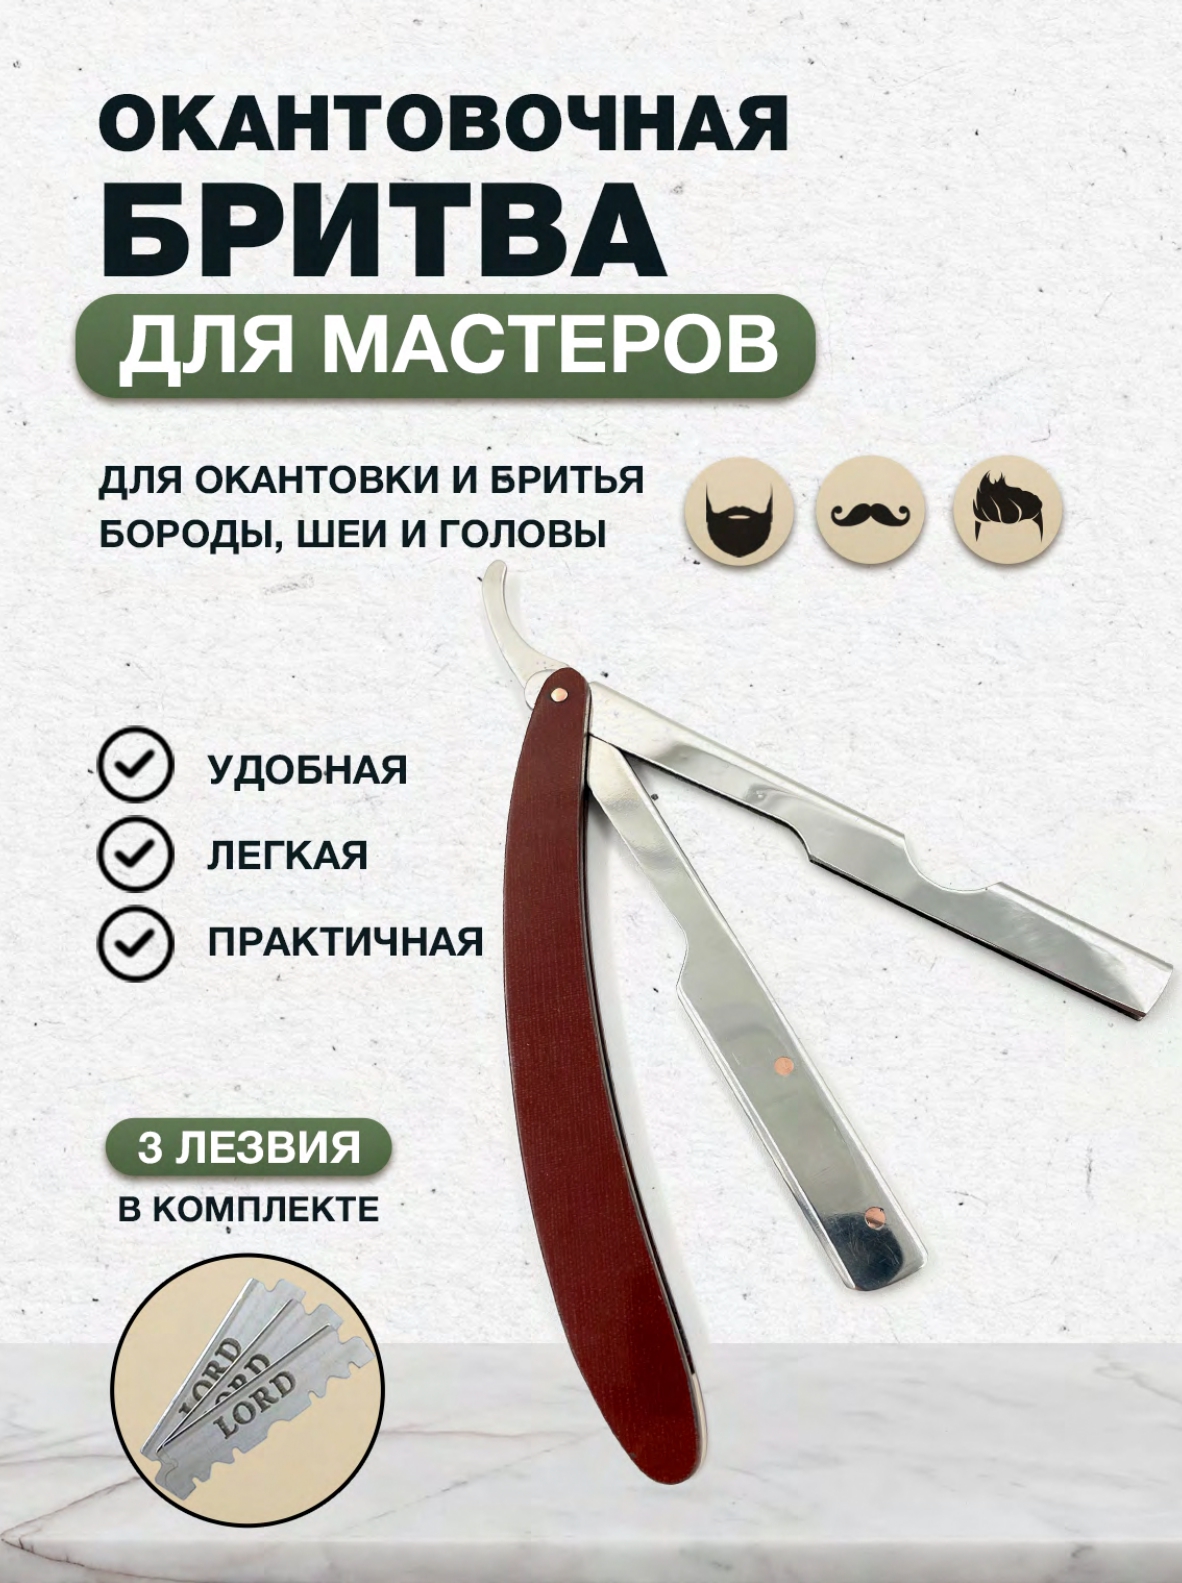 Узбекская шаветка AlMaz опасная бритва для бритья бороды и усов со сменными лезвиями